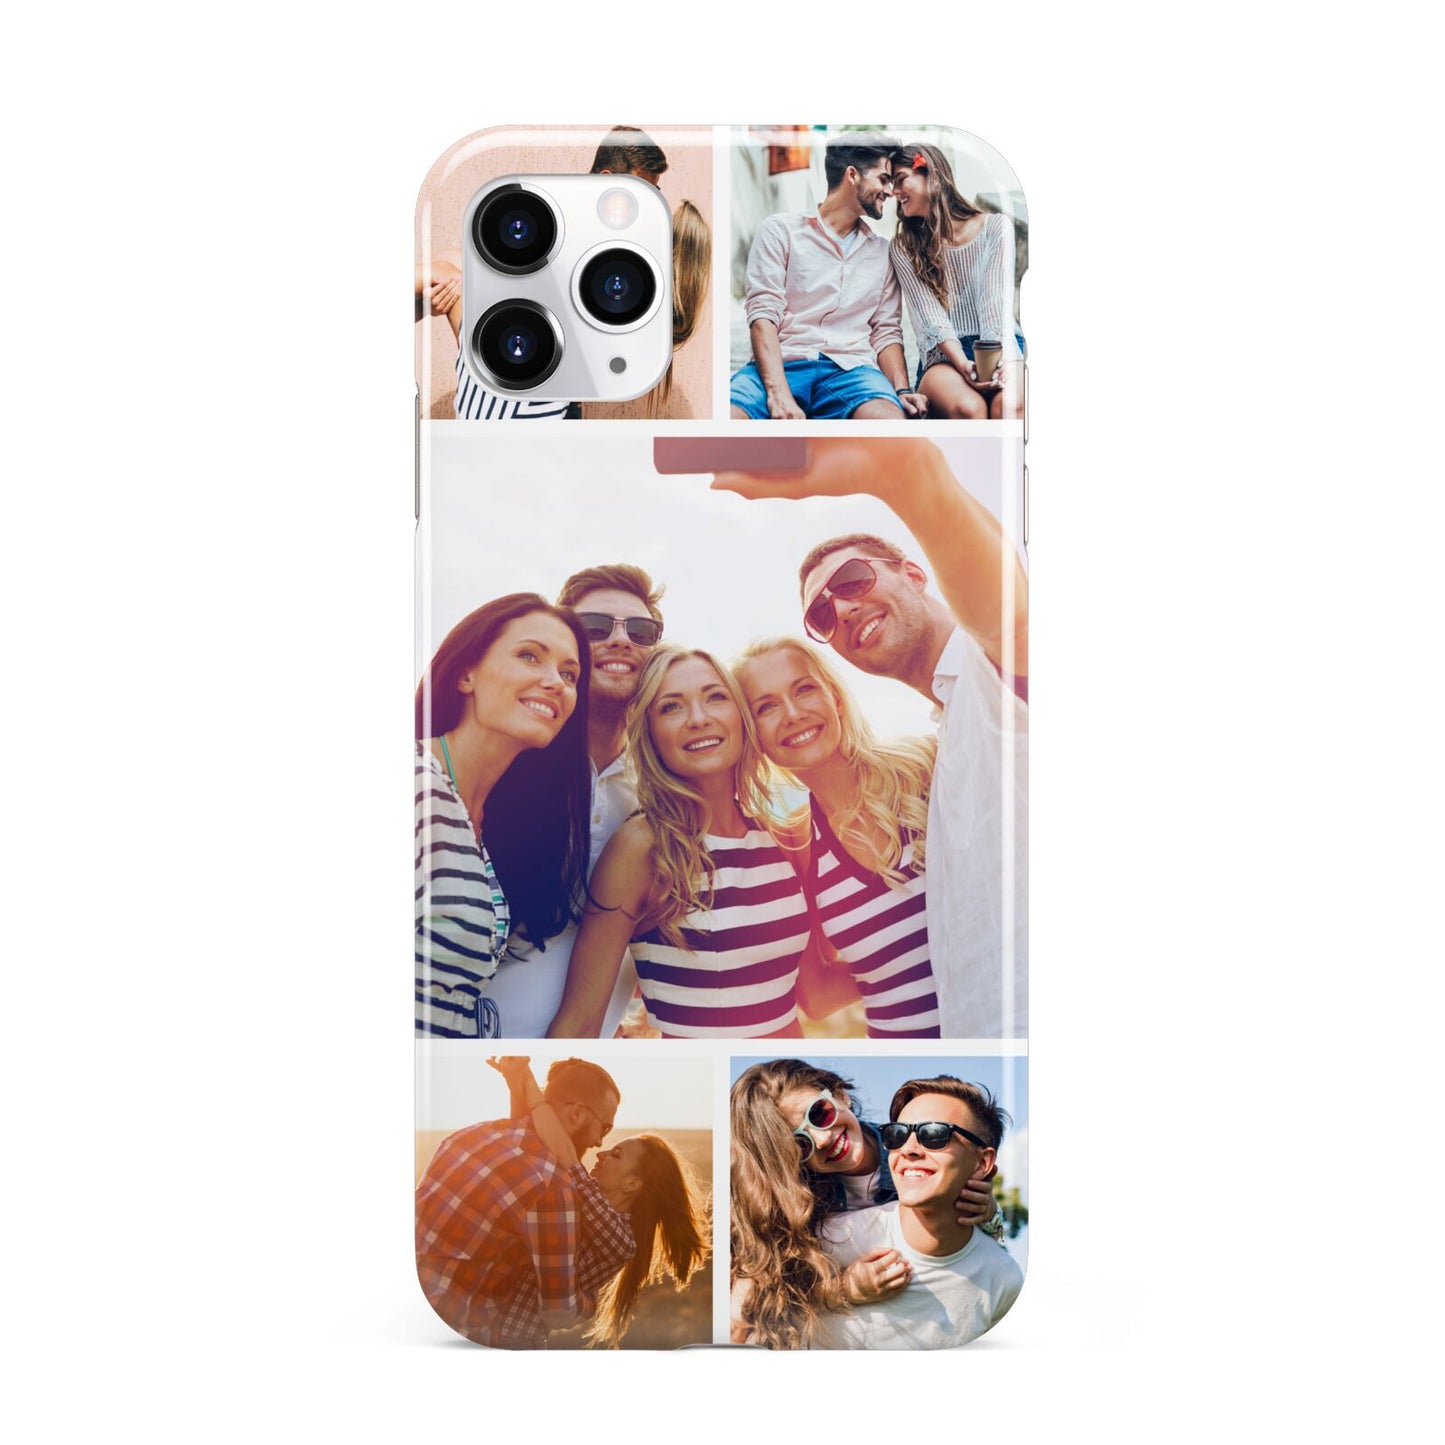 Tile Photo Collage Upload iPhone 11 Pro Max 3D Tough Case